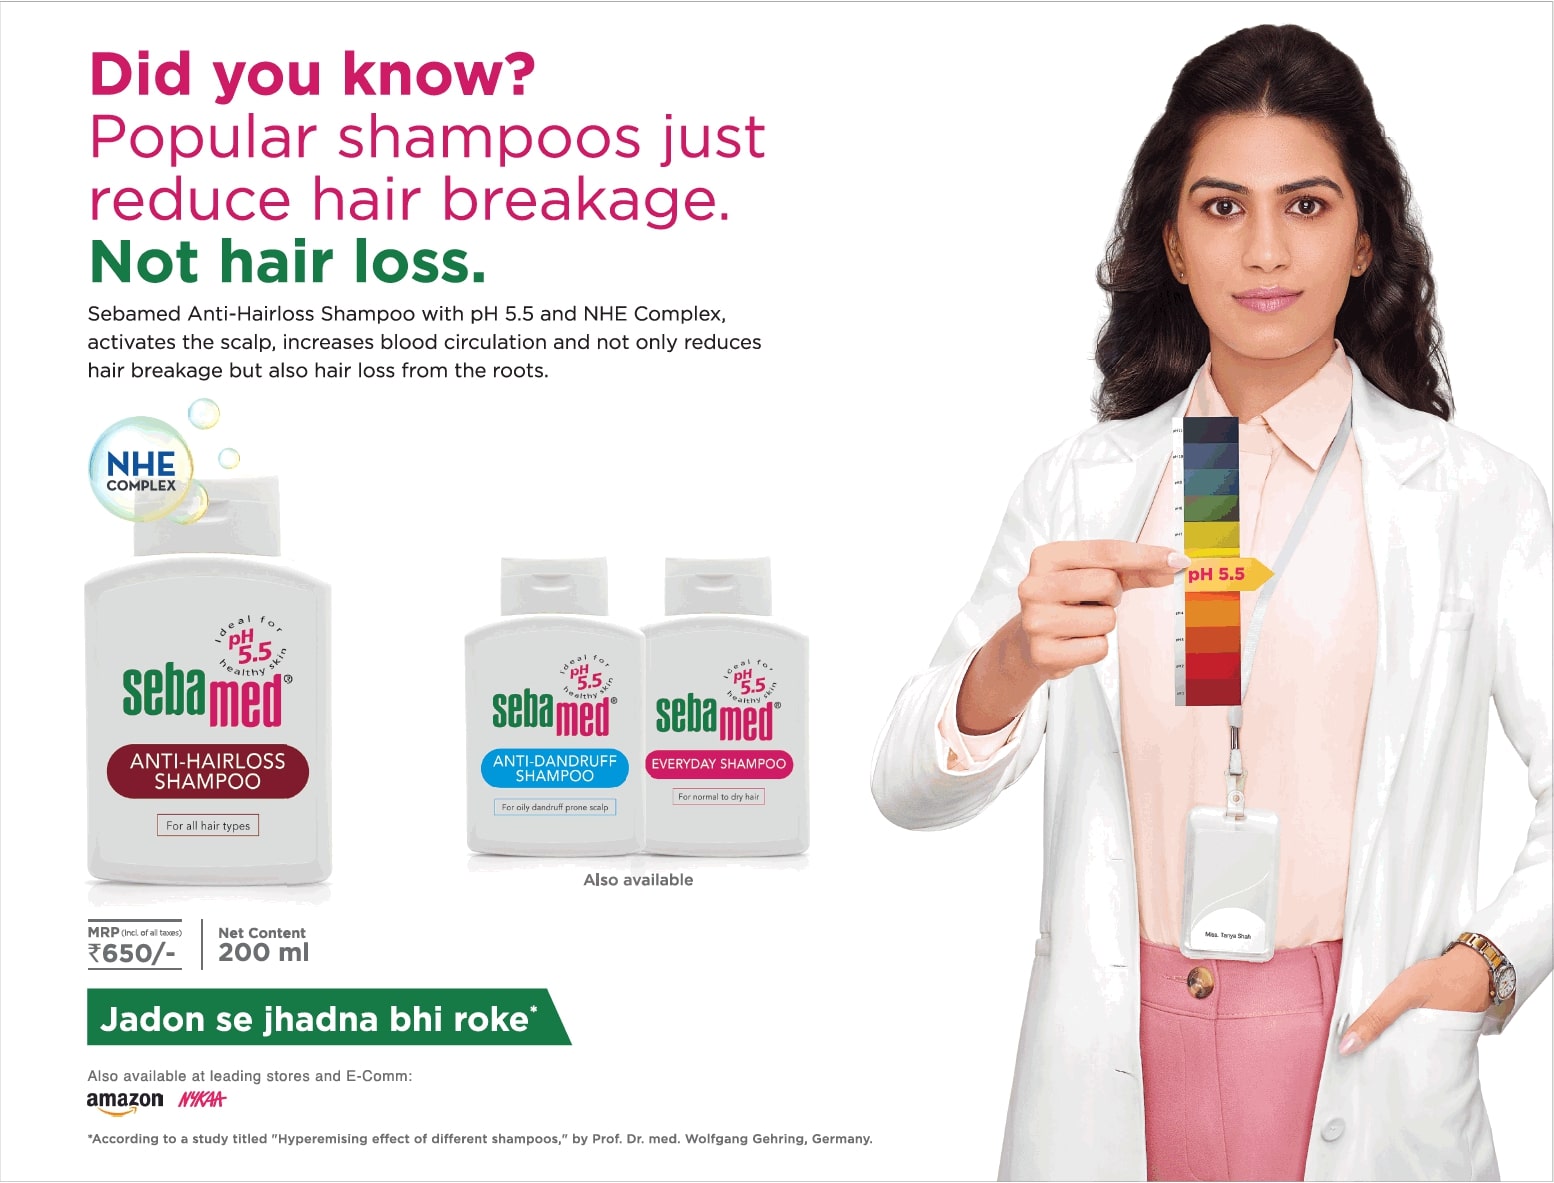 seba-med-anti-hairloss-anti-dandruff-everyday-shampoo-ad-times-of-india-delhi-25-03-2021